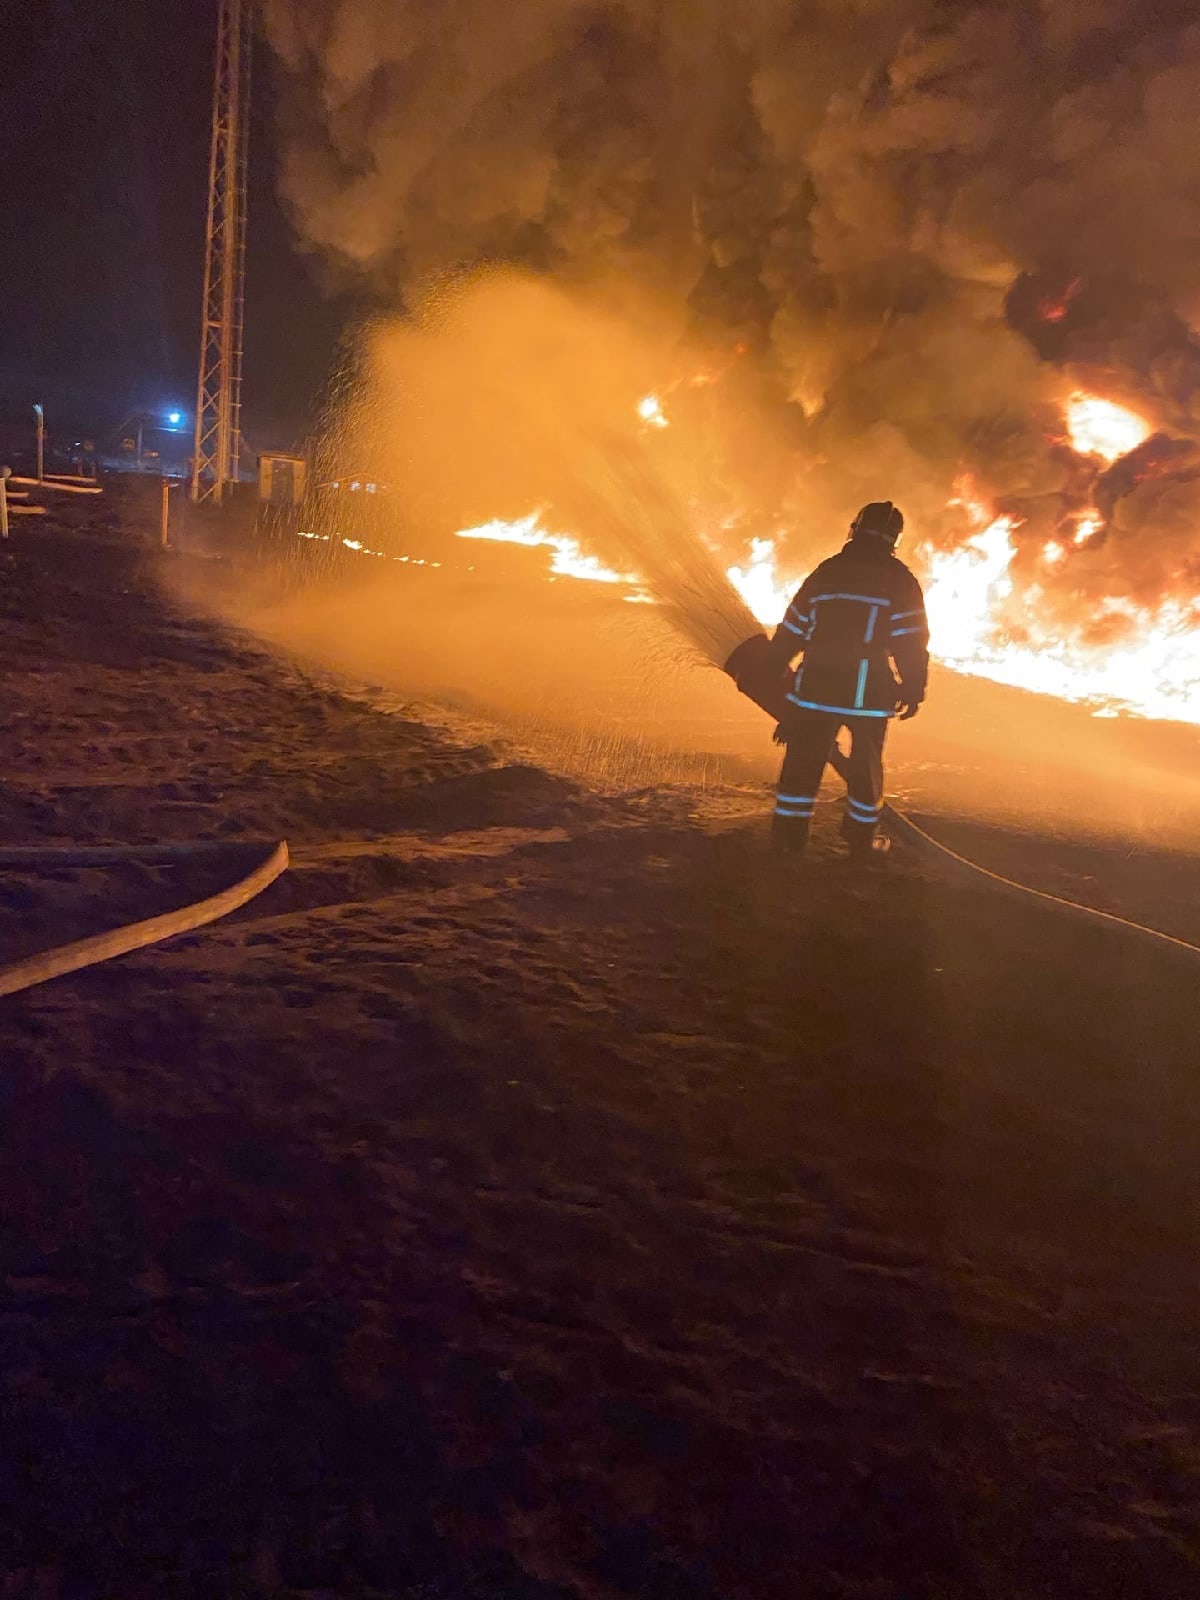 Горит нефтебаза в орле сегодня. Пожар на нефтебазе в Брянске. Нефтебаза Брянск. Пожар на Брянской нефтебазе. Пожар фото.